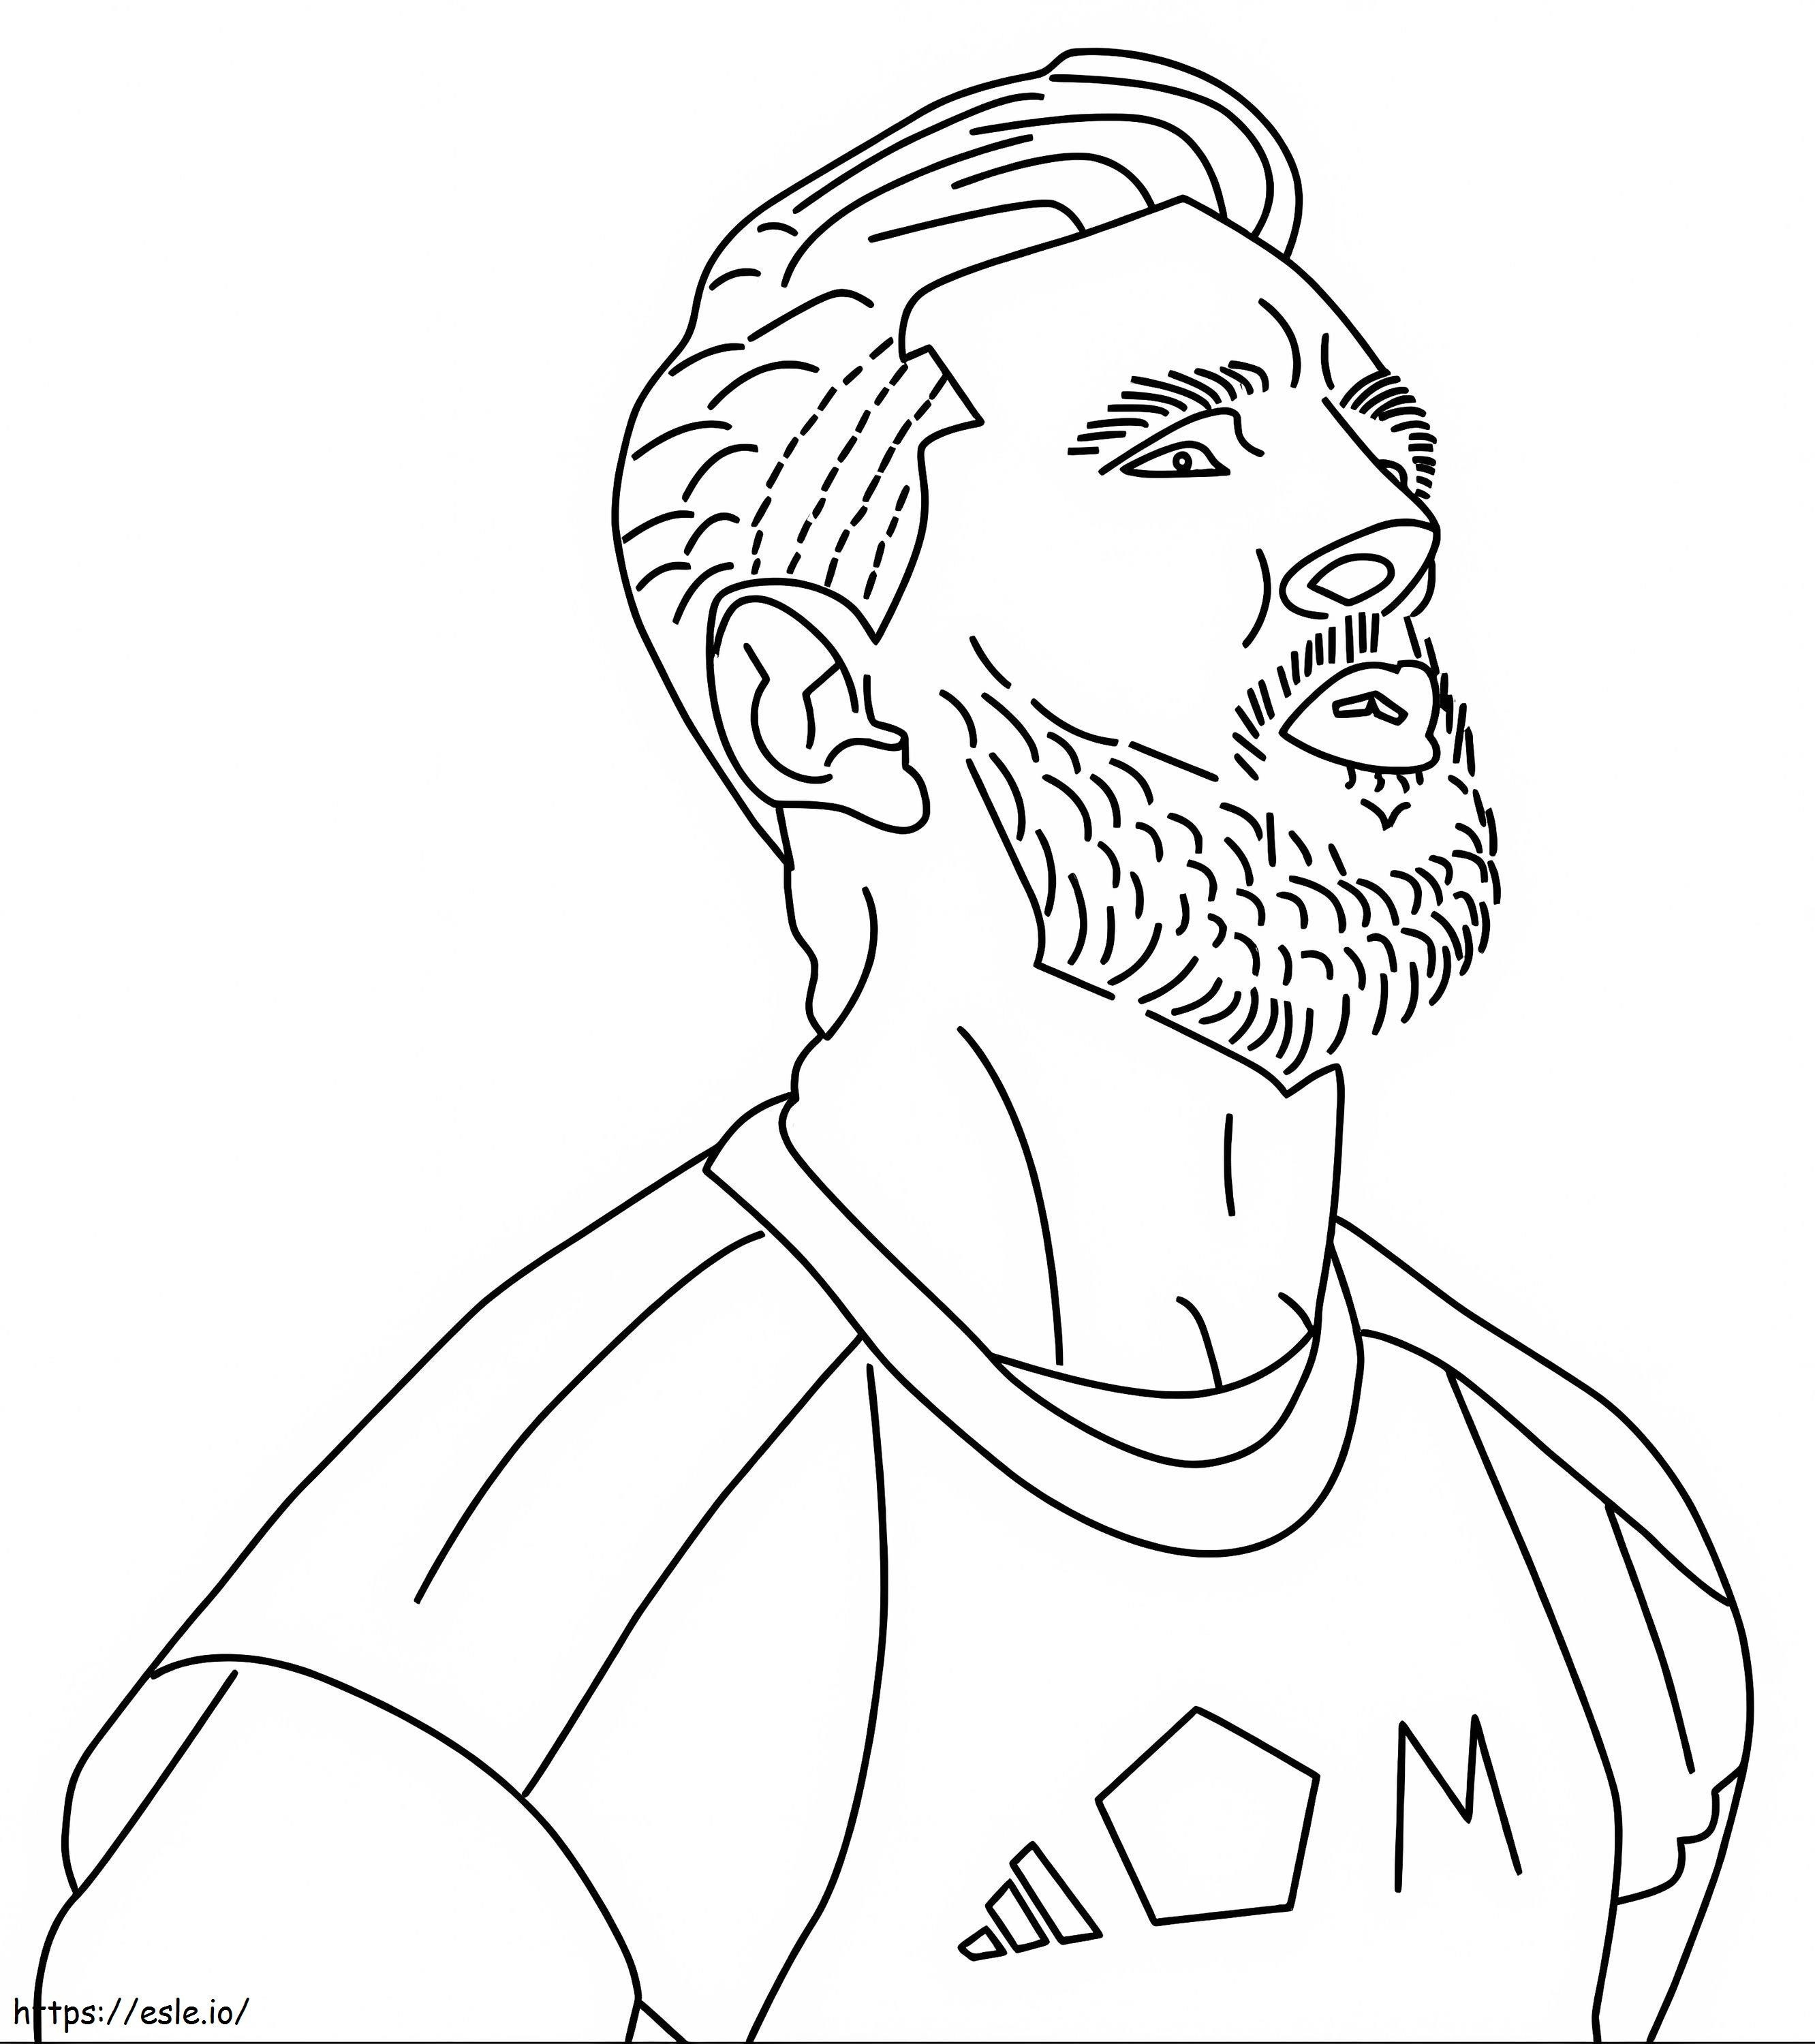 O rosto de Lionel Messi para colorir